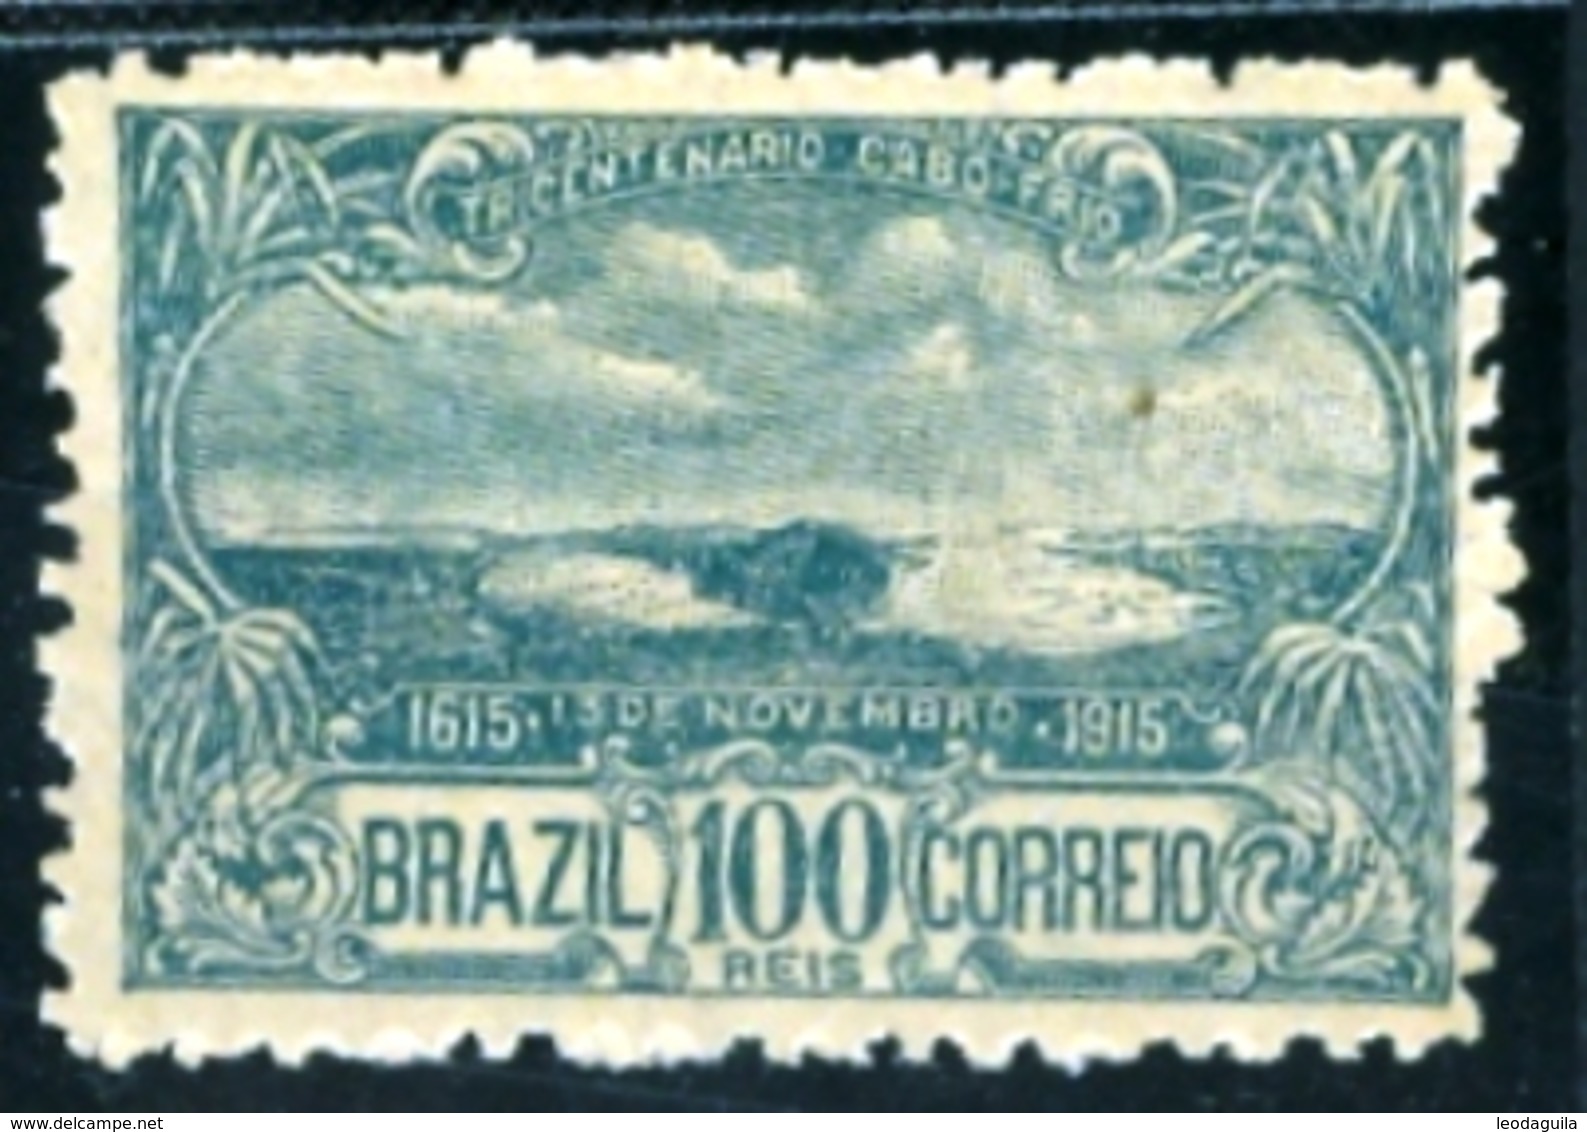 BRAZIL # 165  - FOUNDATION  CITY OF CABO FRIO - 3rd  CENTENARY  -  MINT / OG  - 1915 - Nuovi